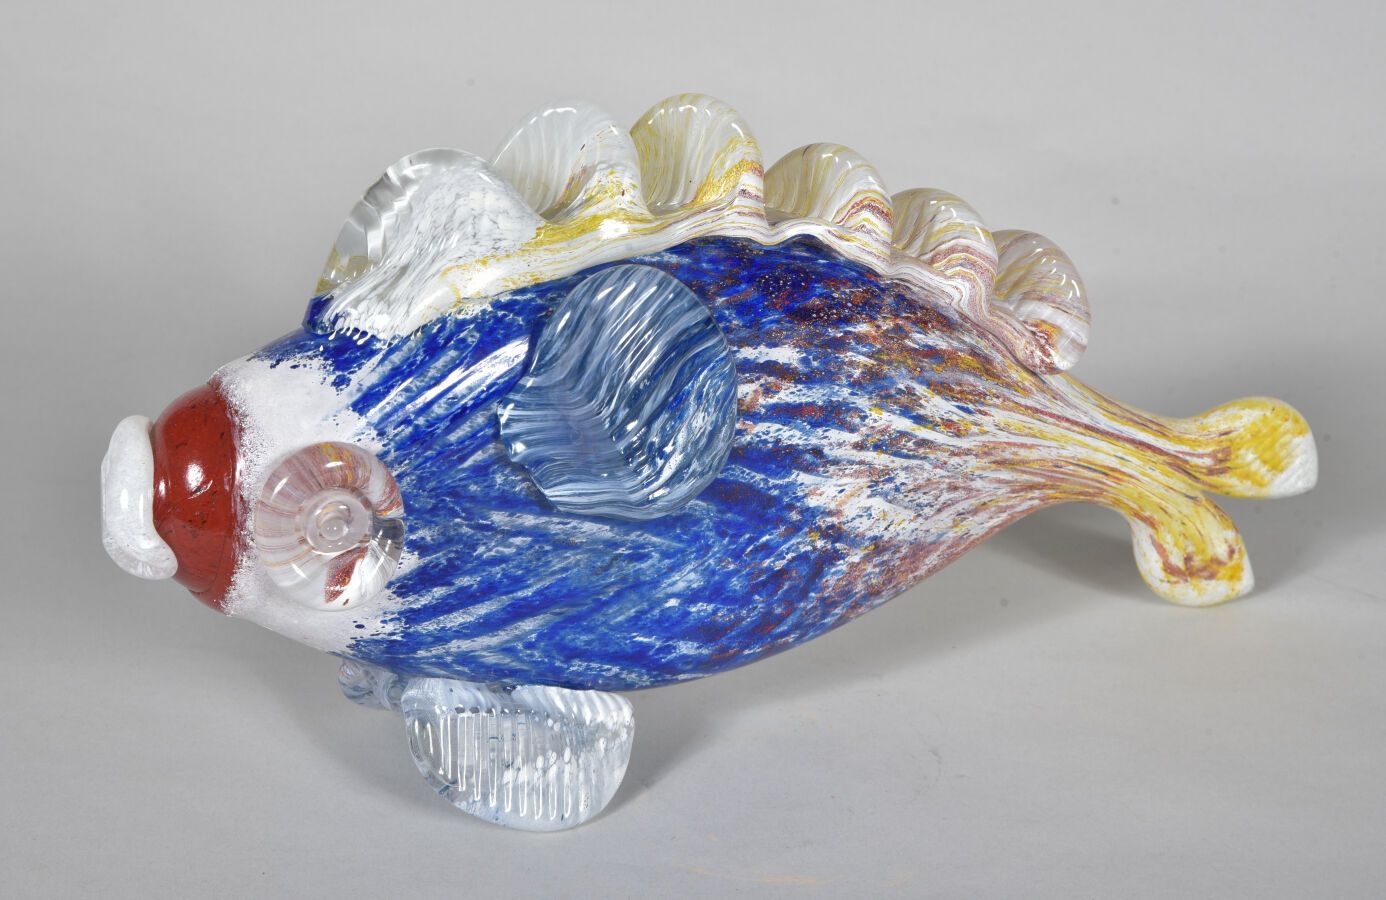 Null Jean-Claude NOVARO (1943-2015)

Escultura de peces en vidrio soplado de dif&hellip;